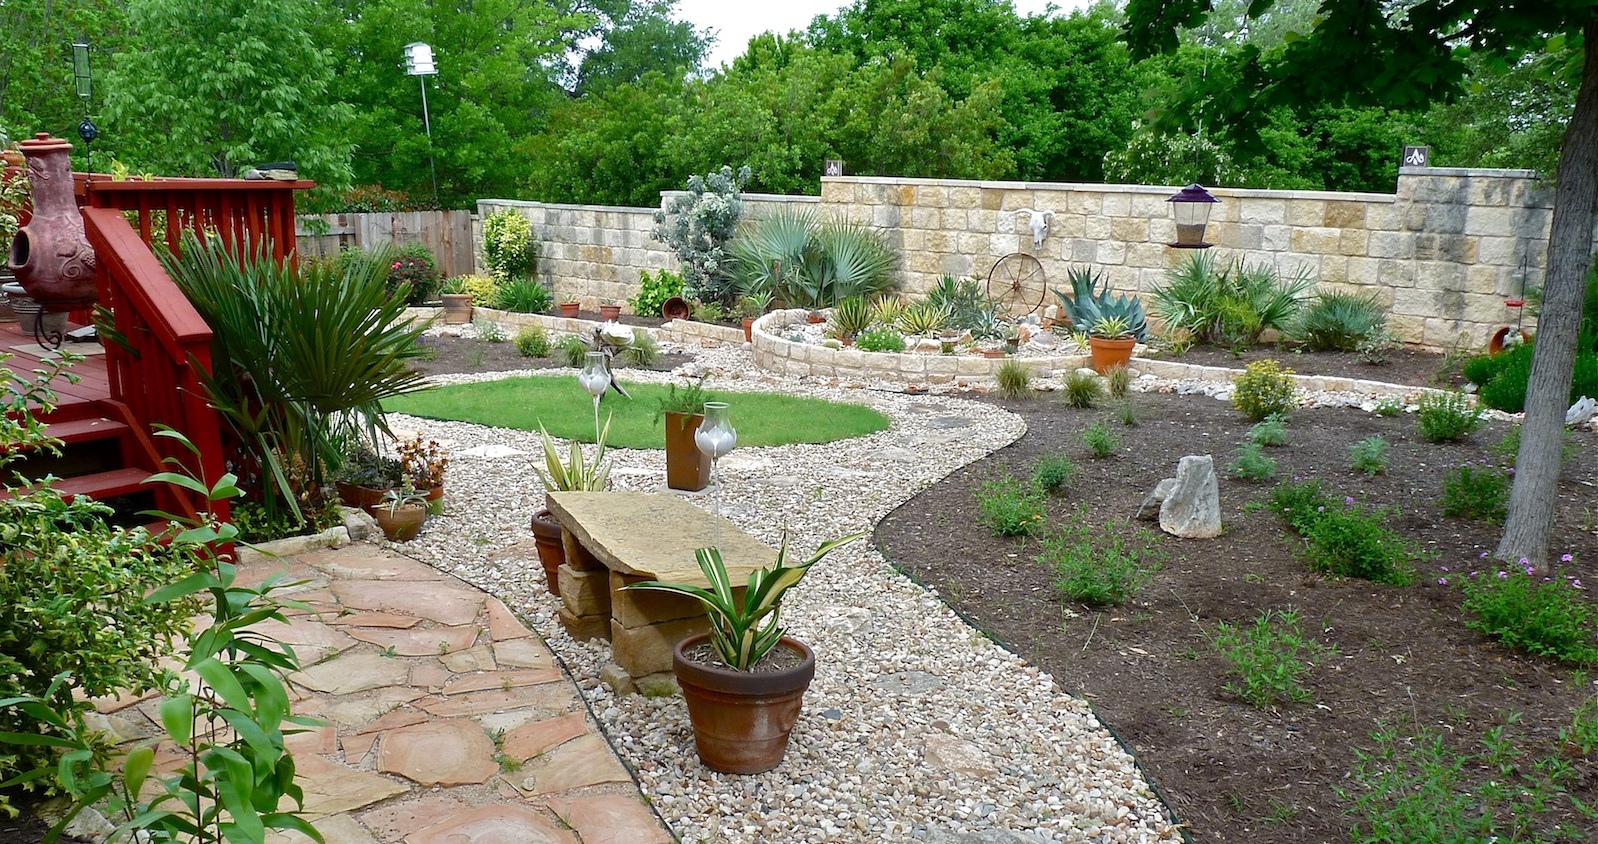 Texas Backyard Landscaping Ideas Home Interior Design 2016